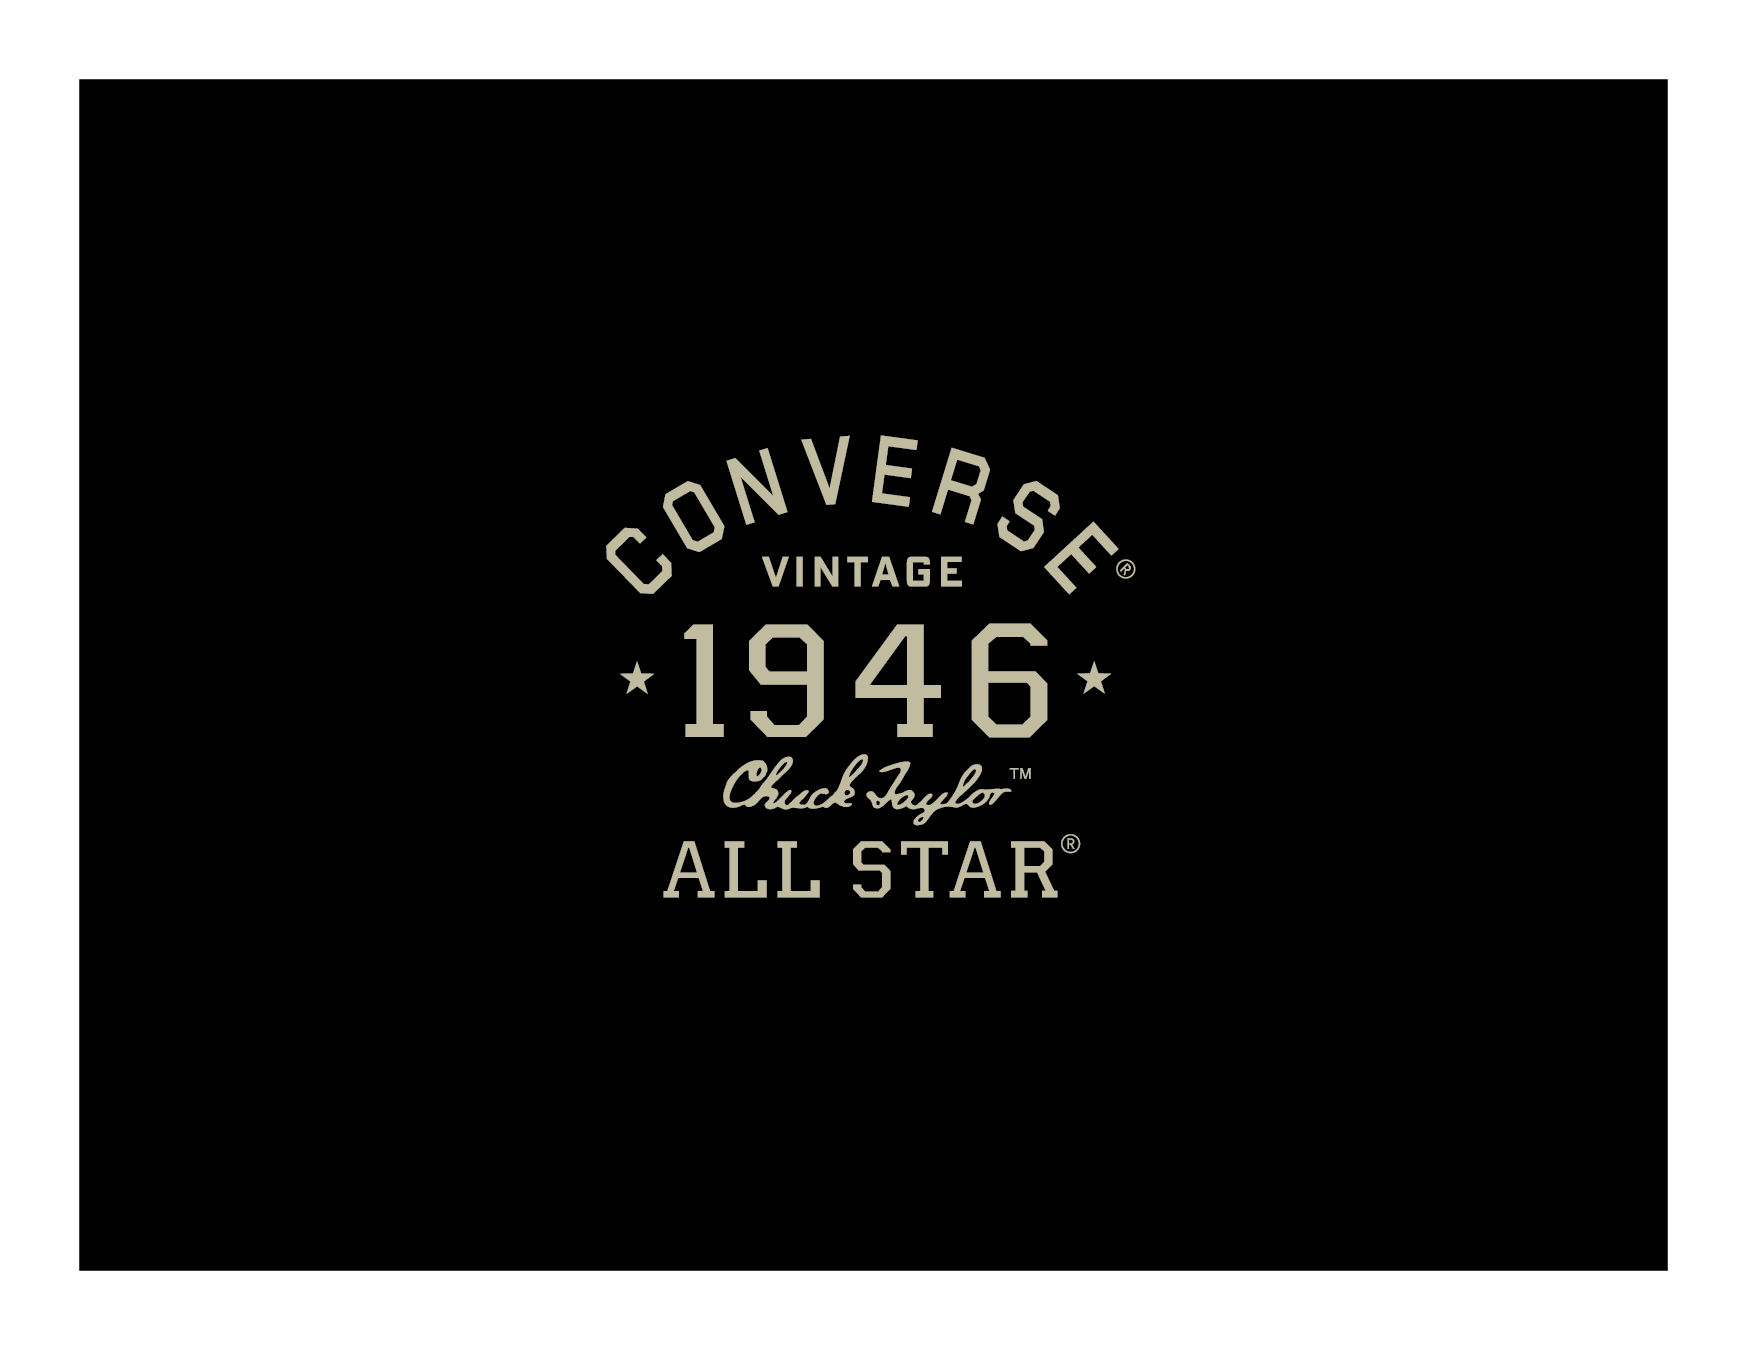 Converse 1946 logo design